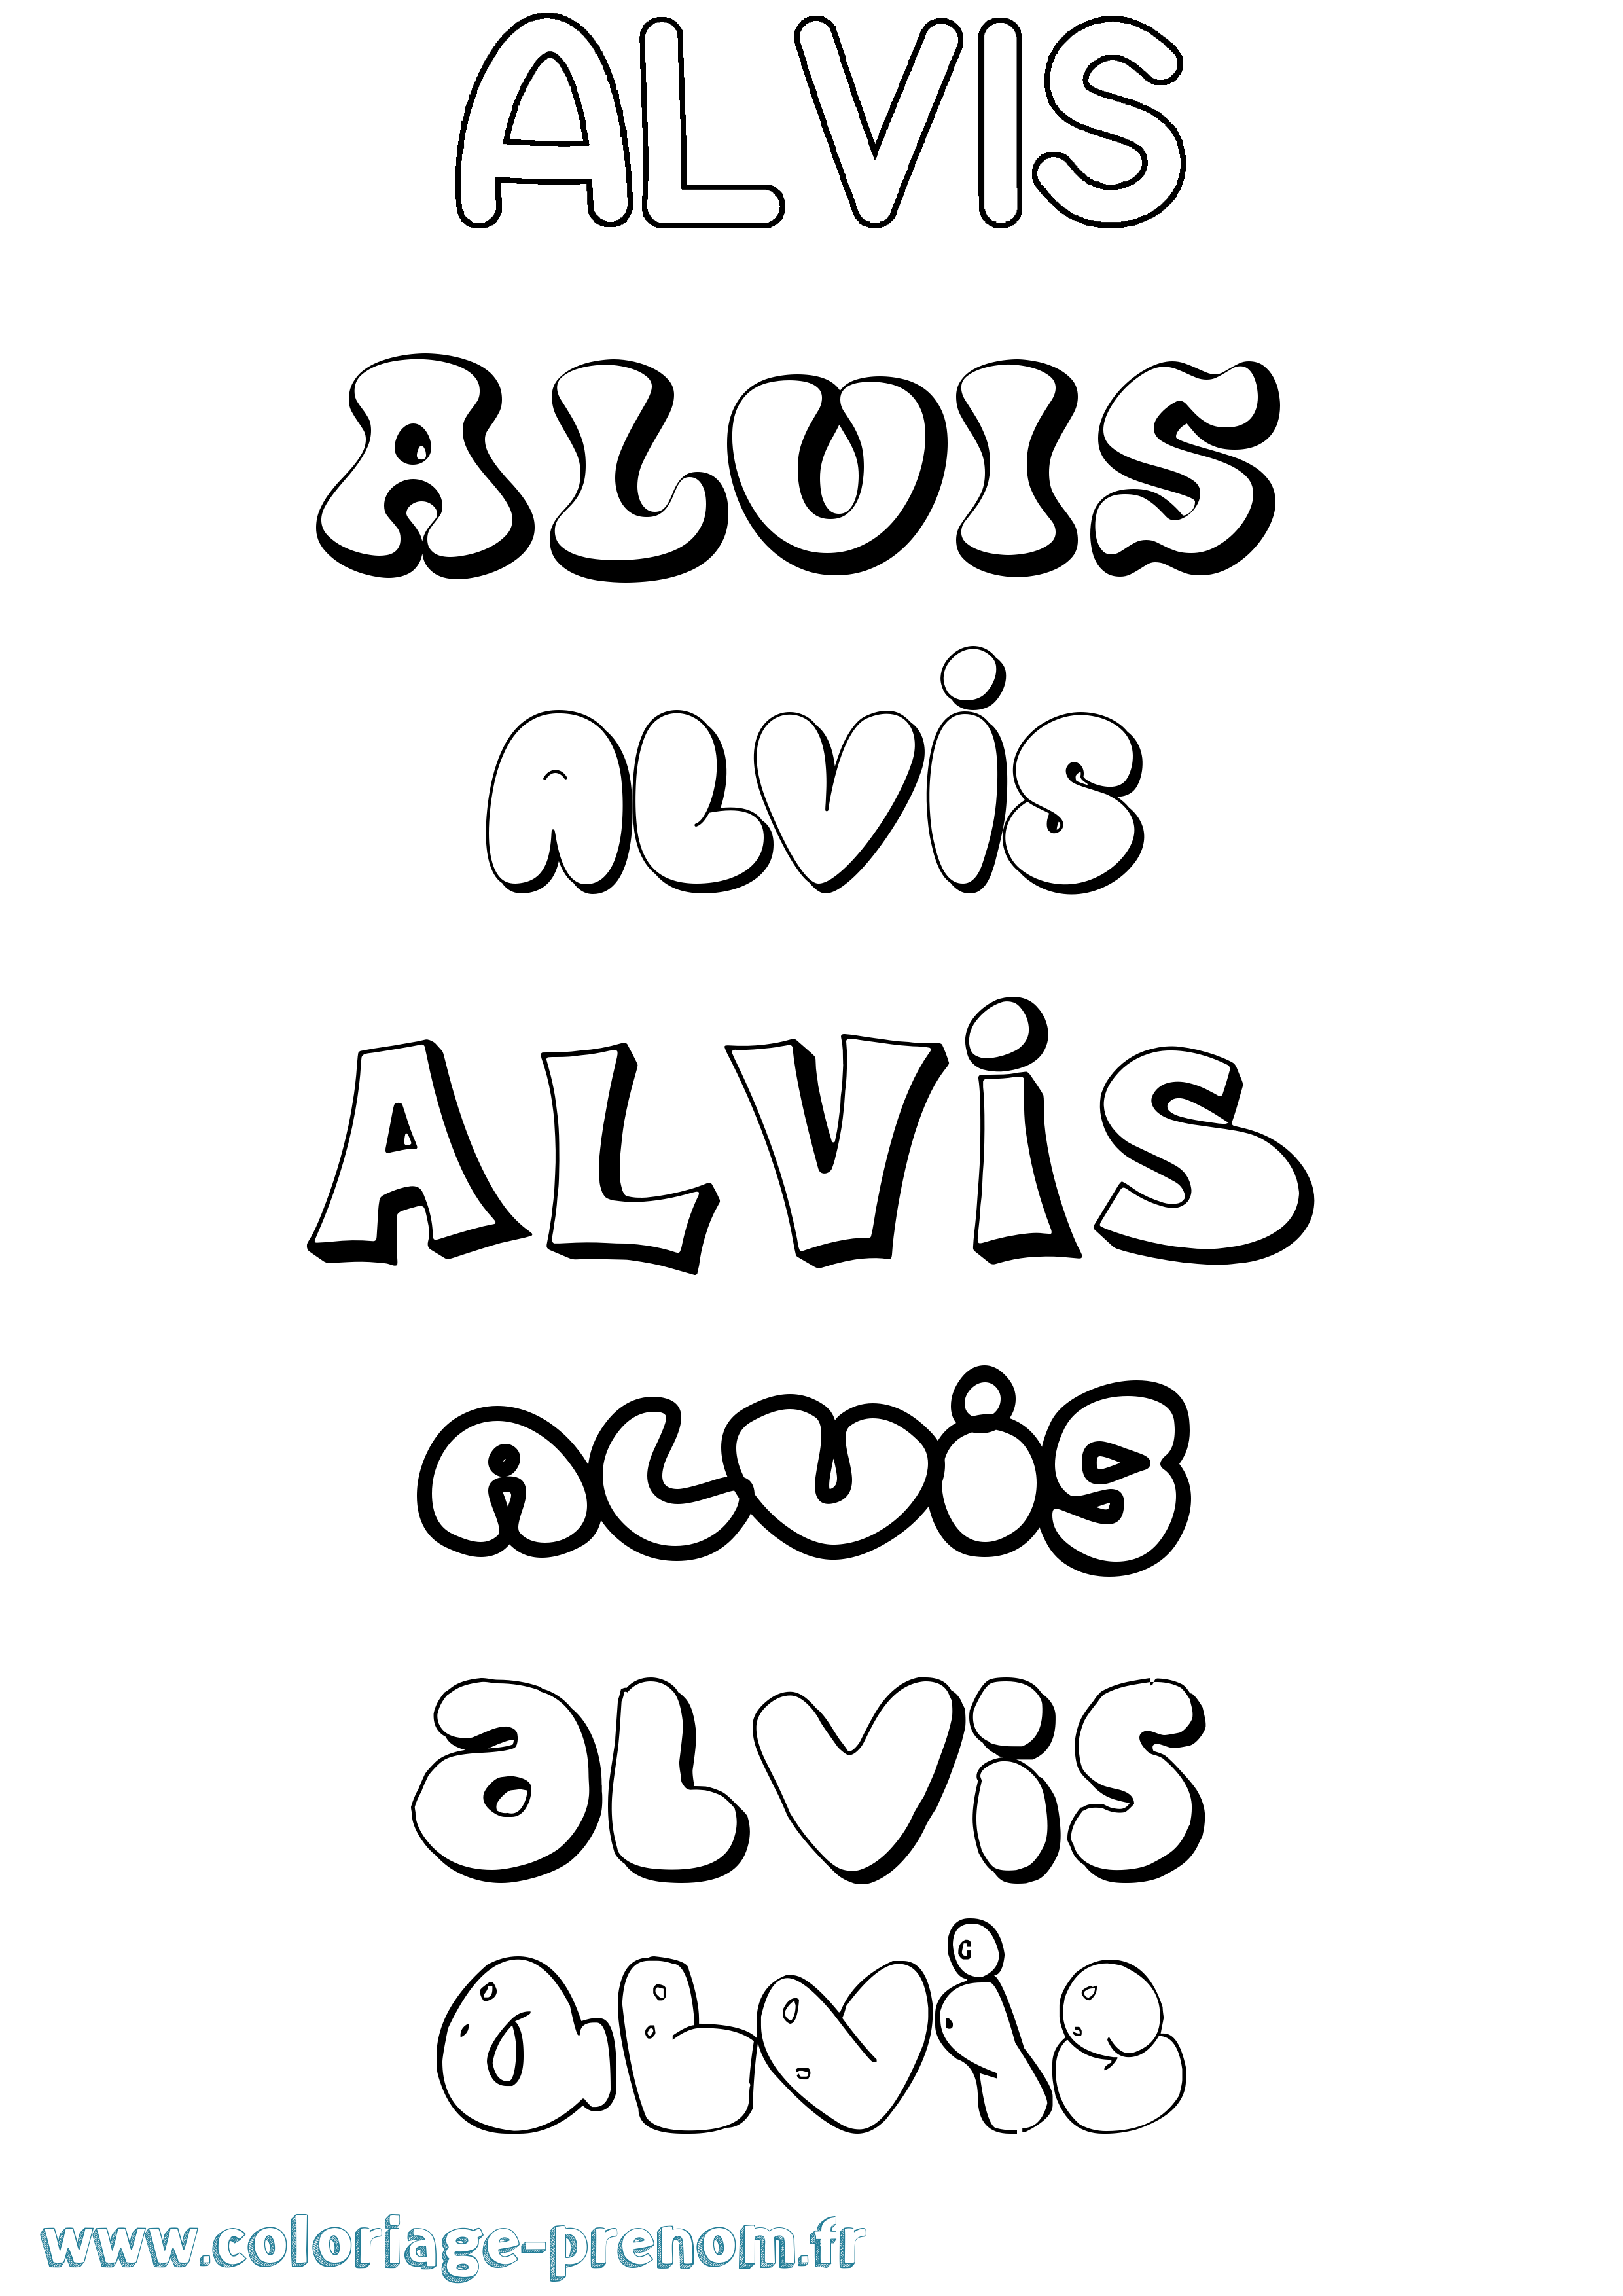 Coloriage prénom Alvis Bubble